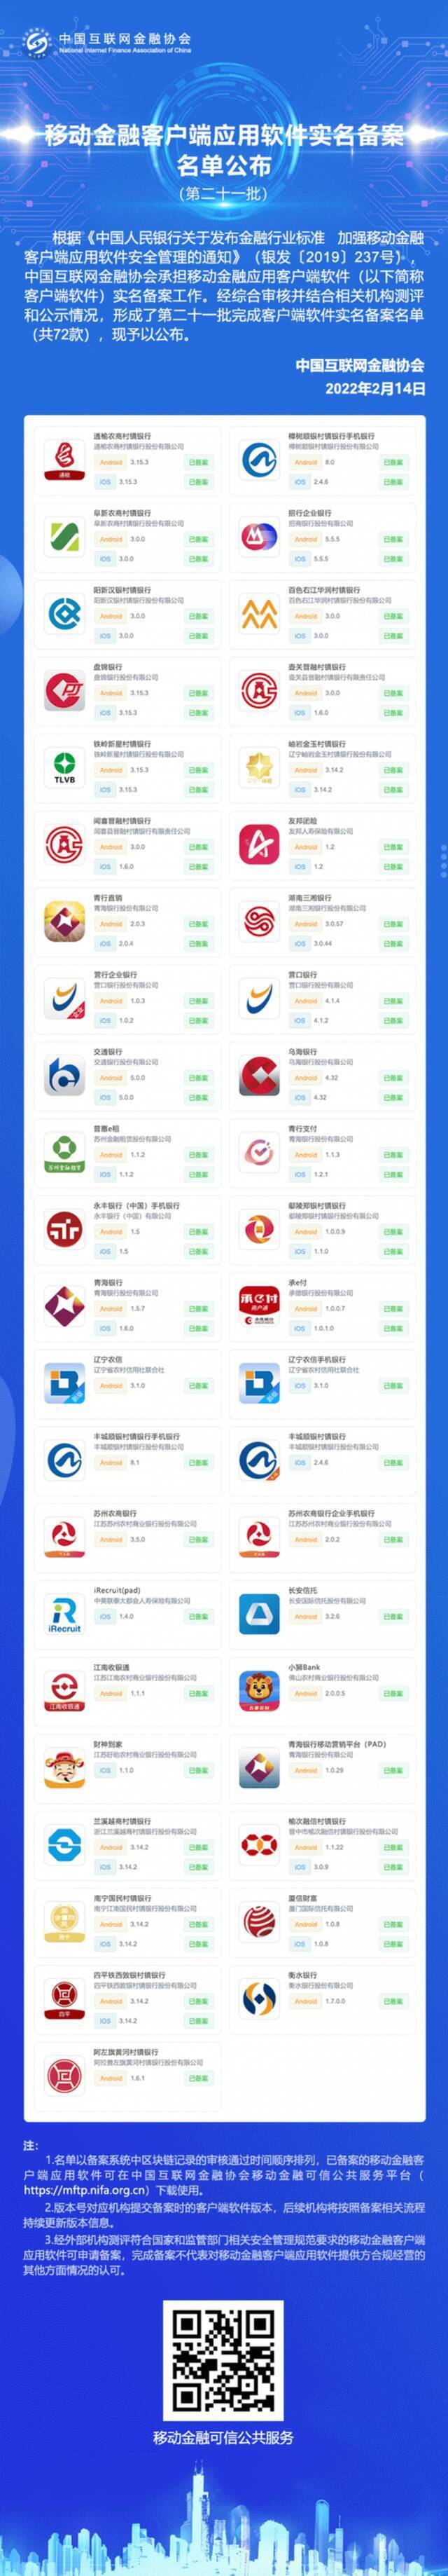 中国互金协会公布72款移动金融App实名备案名单